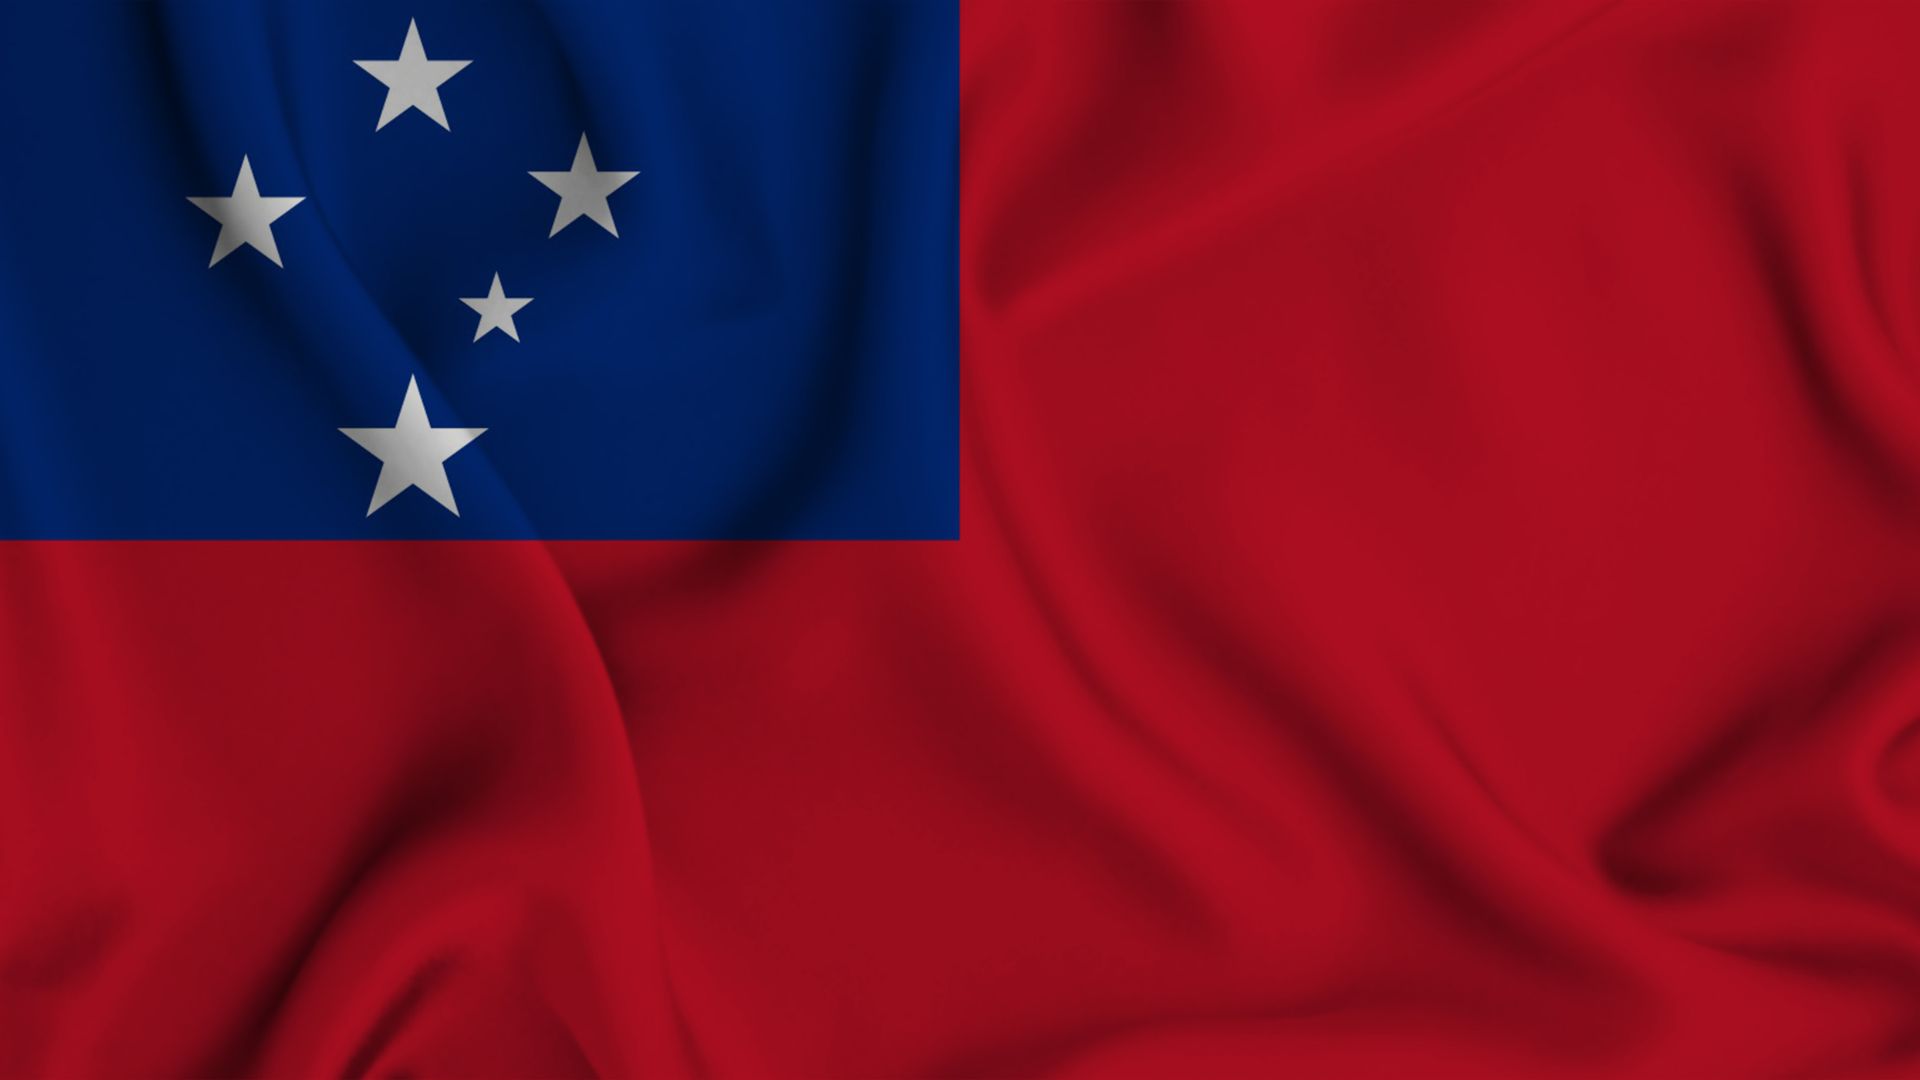 A bandeira de Samoa possui as cores vermelho e azul. No canto superior esquerdo, no quadrado azul, existe uma constelação de 5 estrelas.